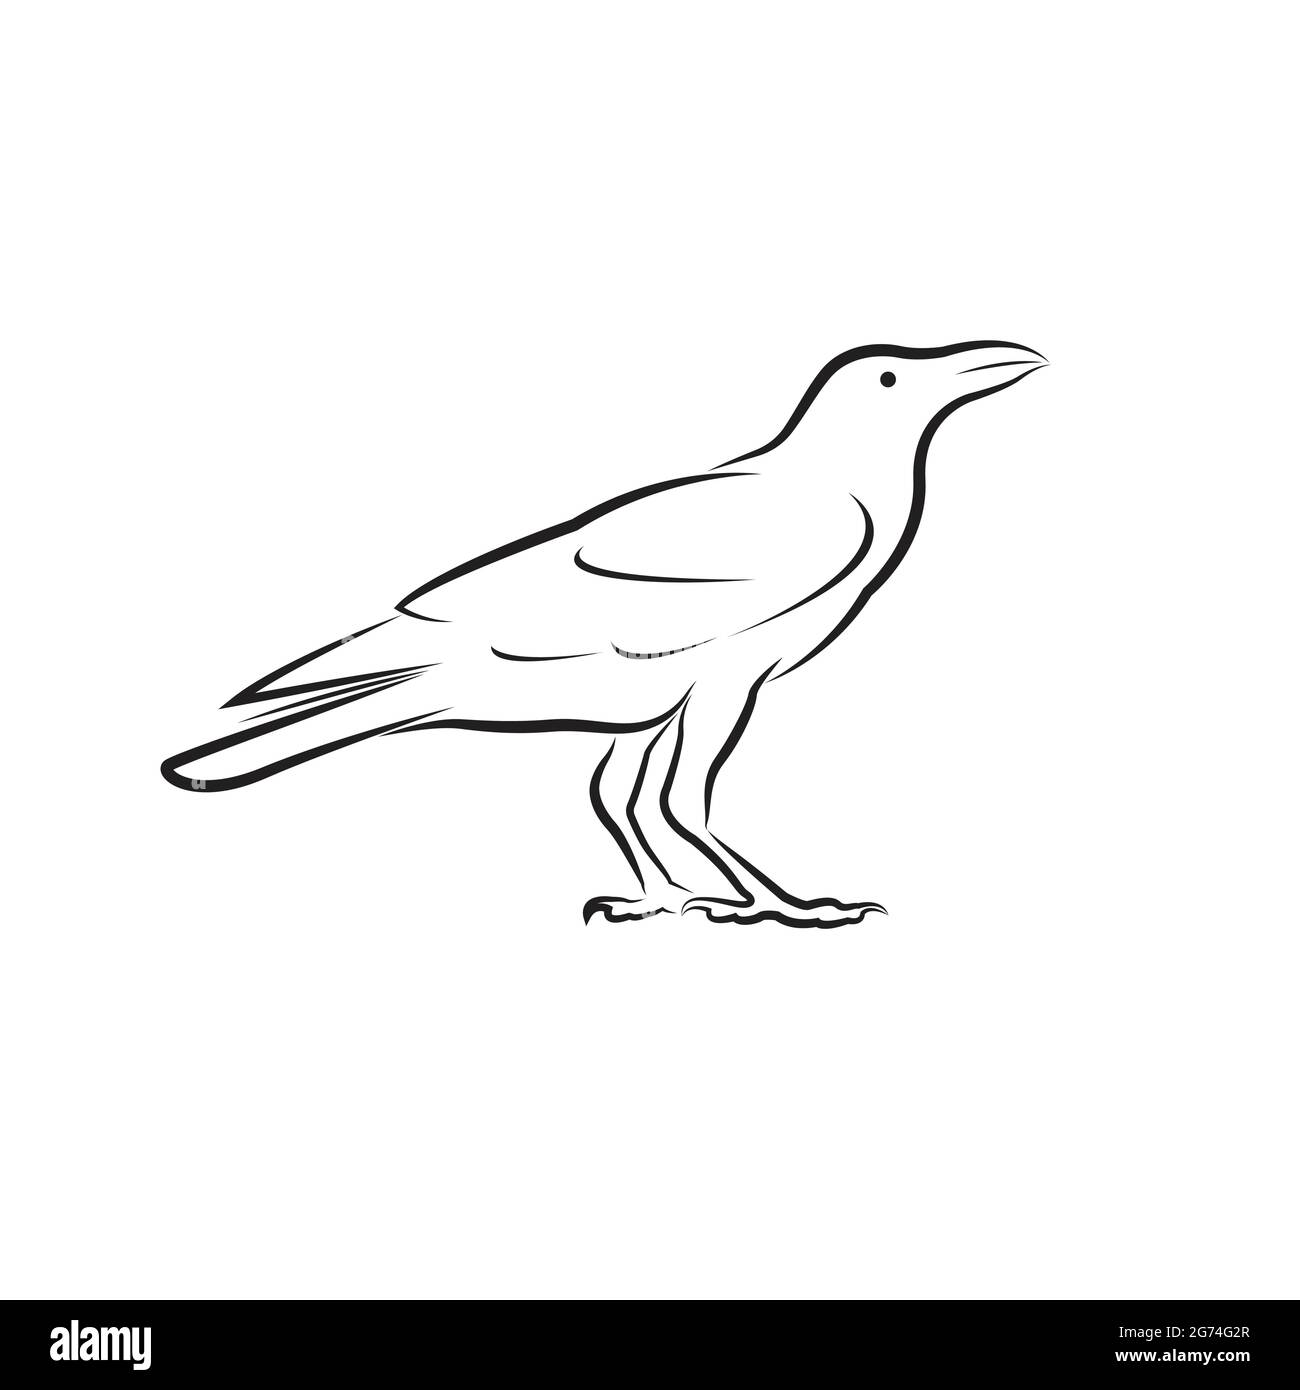 Vecteur de conception de corbeau isolé sur fond blanc. Illustration vectorielle superposée facile à modifier. Animaux sauvages. Illustration de Vecteur